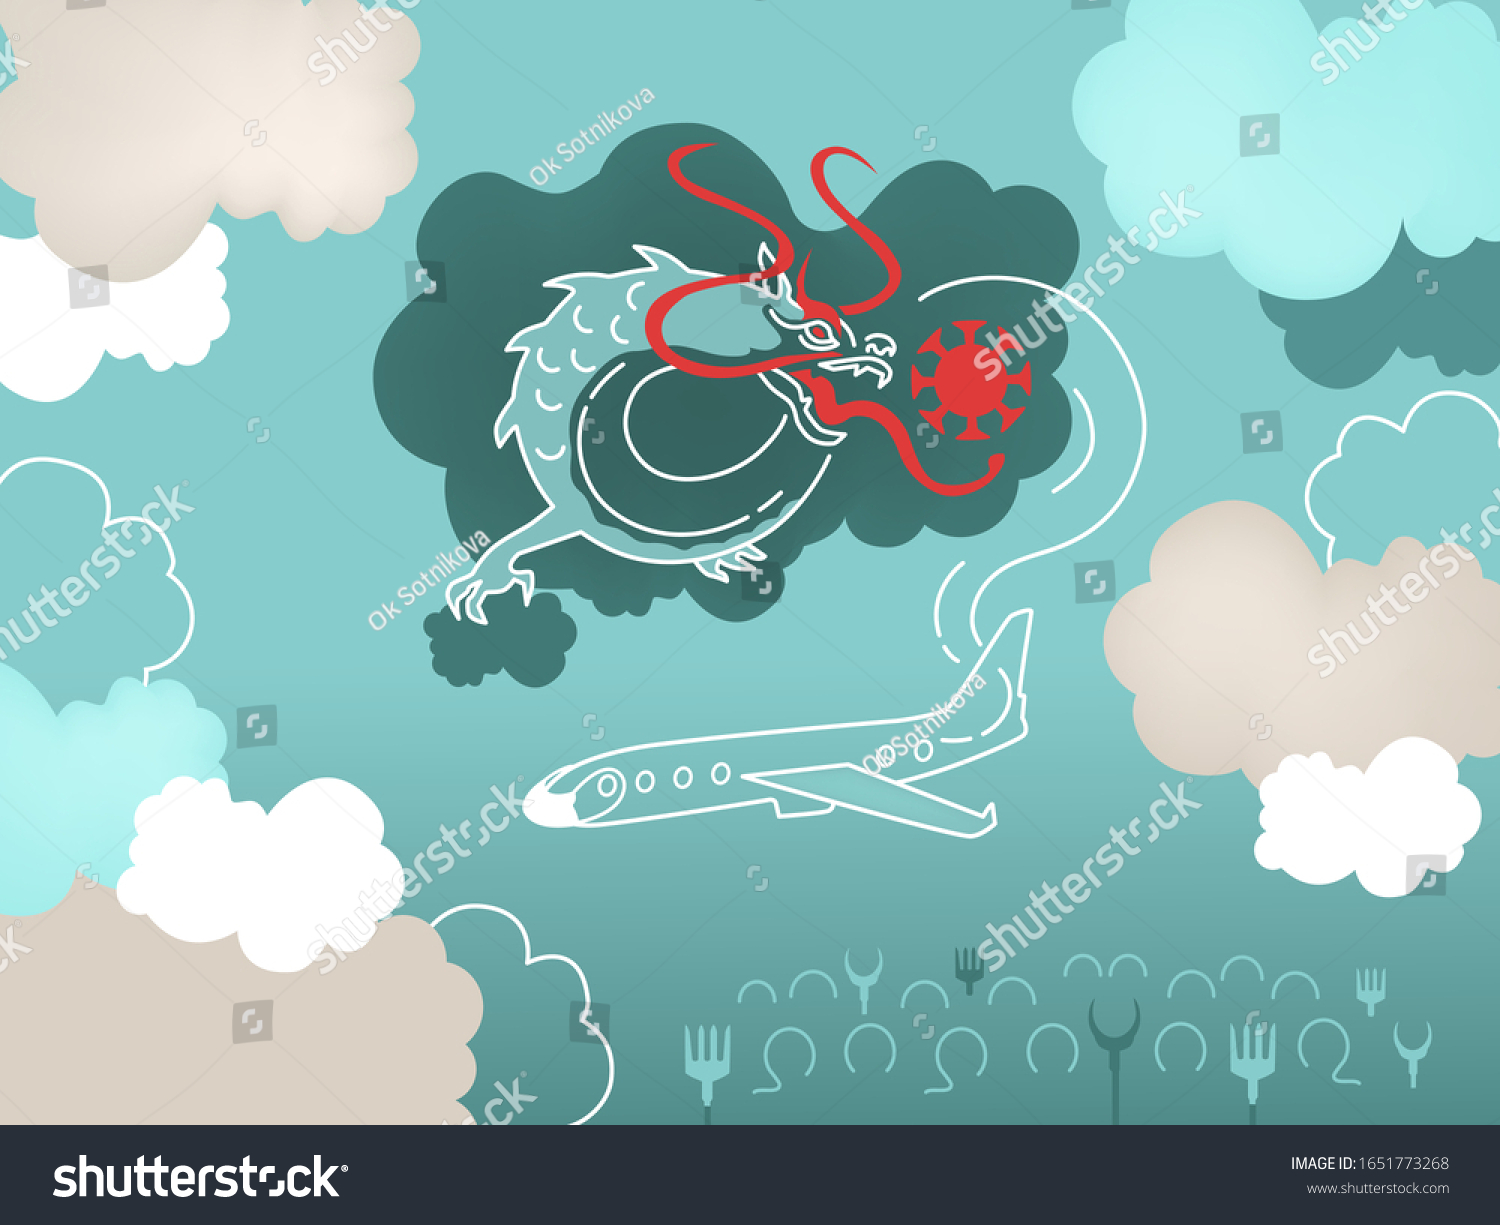 イラトス 皮肉な漫画 風刺画 コロナウイルス の曇り空にドラゴンを吹き付け バナー 背景 病気や治療法の一般的な治療法 中国からの飛行機 ポスター のベクター画像素材 ロイヤリティフリー